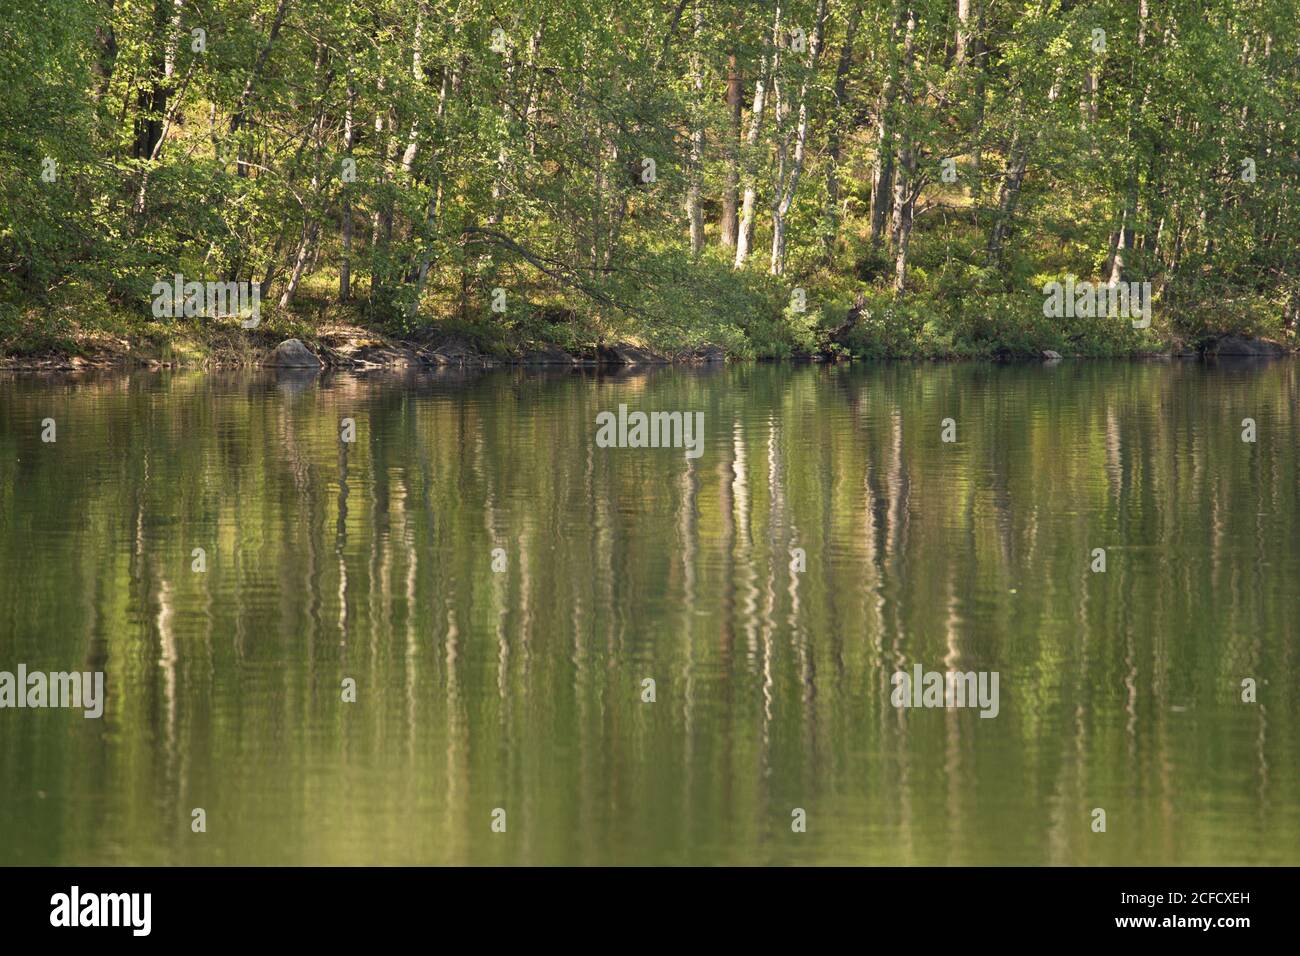 Betulla albero riflessione sulla superficie del lago, scenario estivo, Finlandia Foto Stock